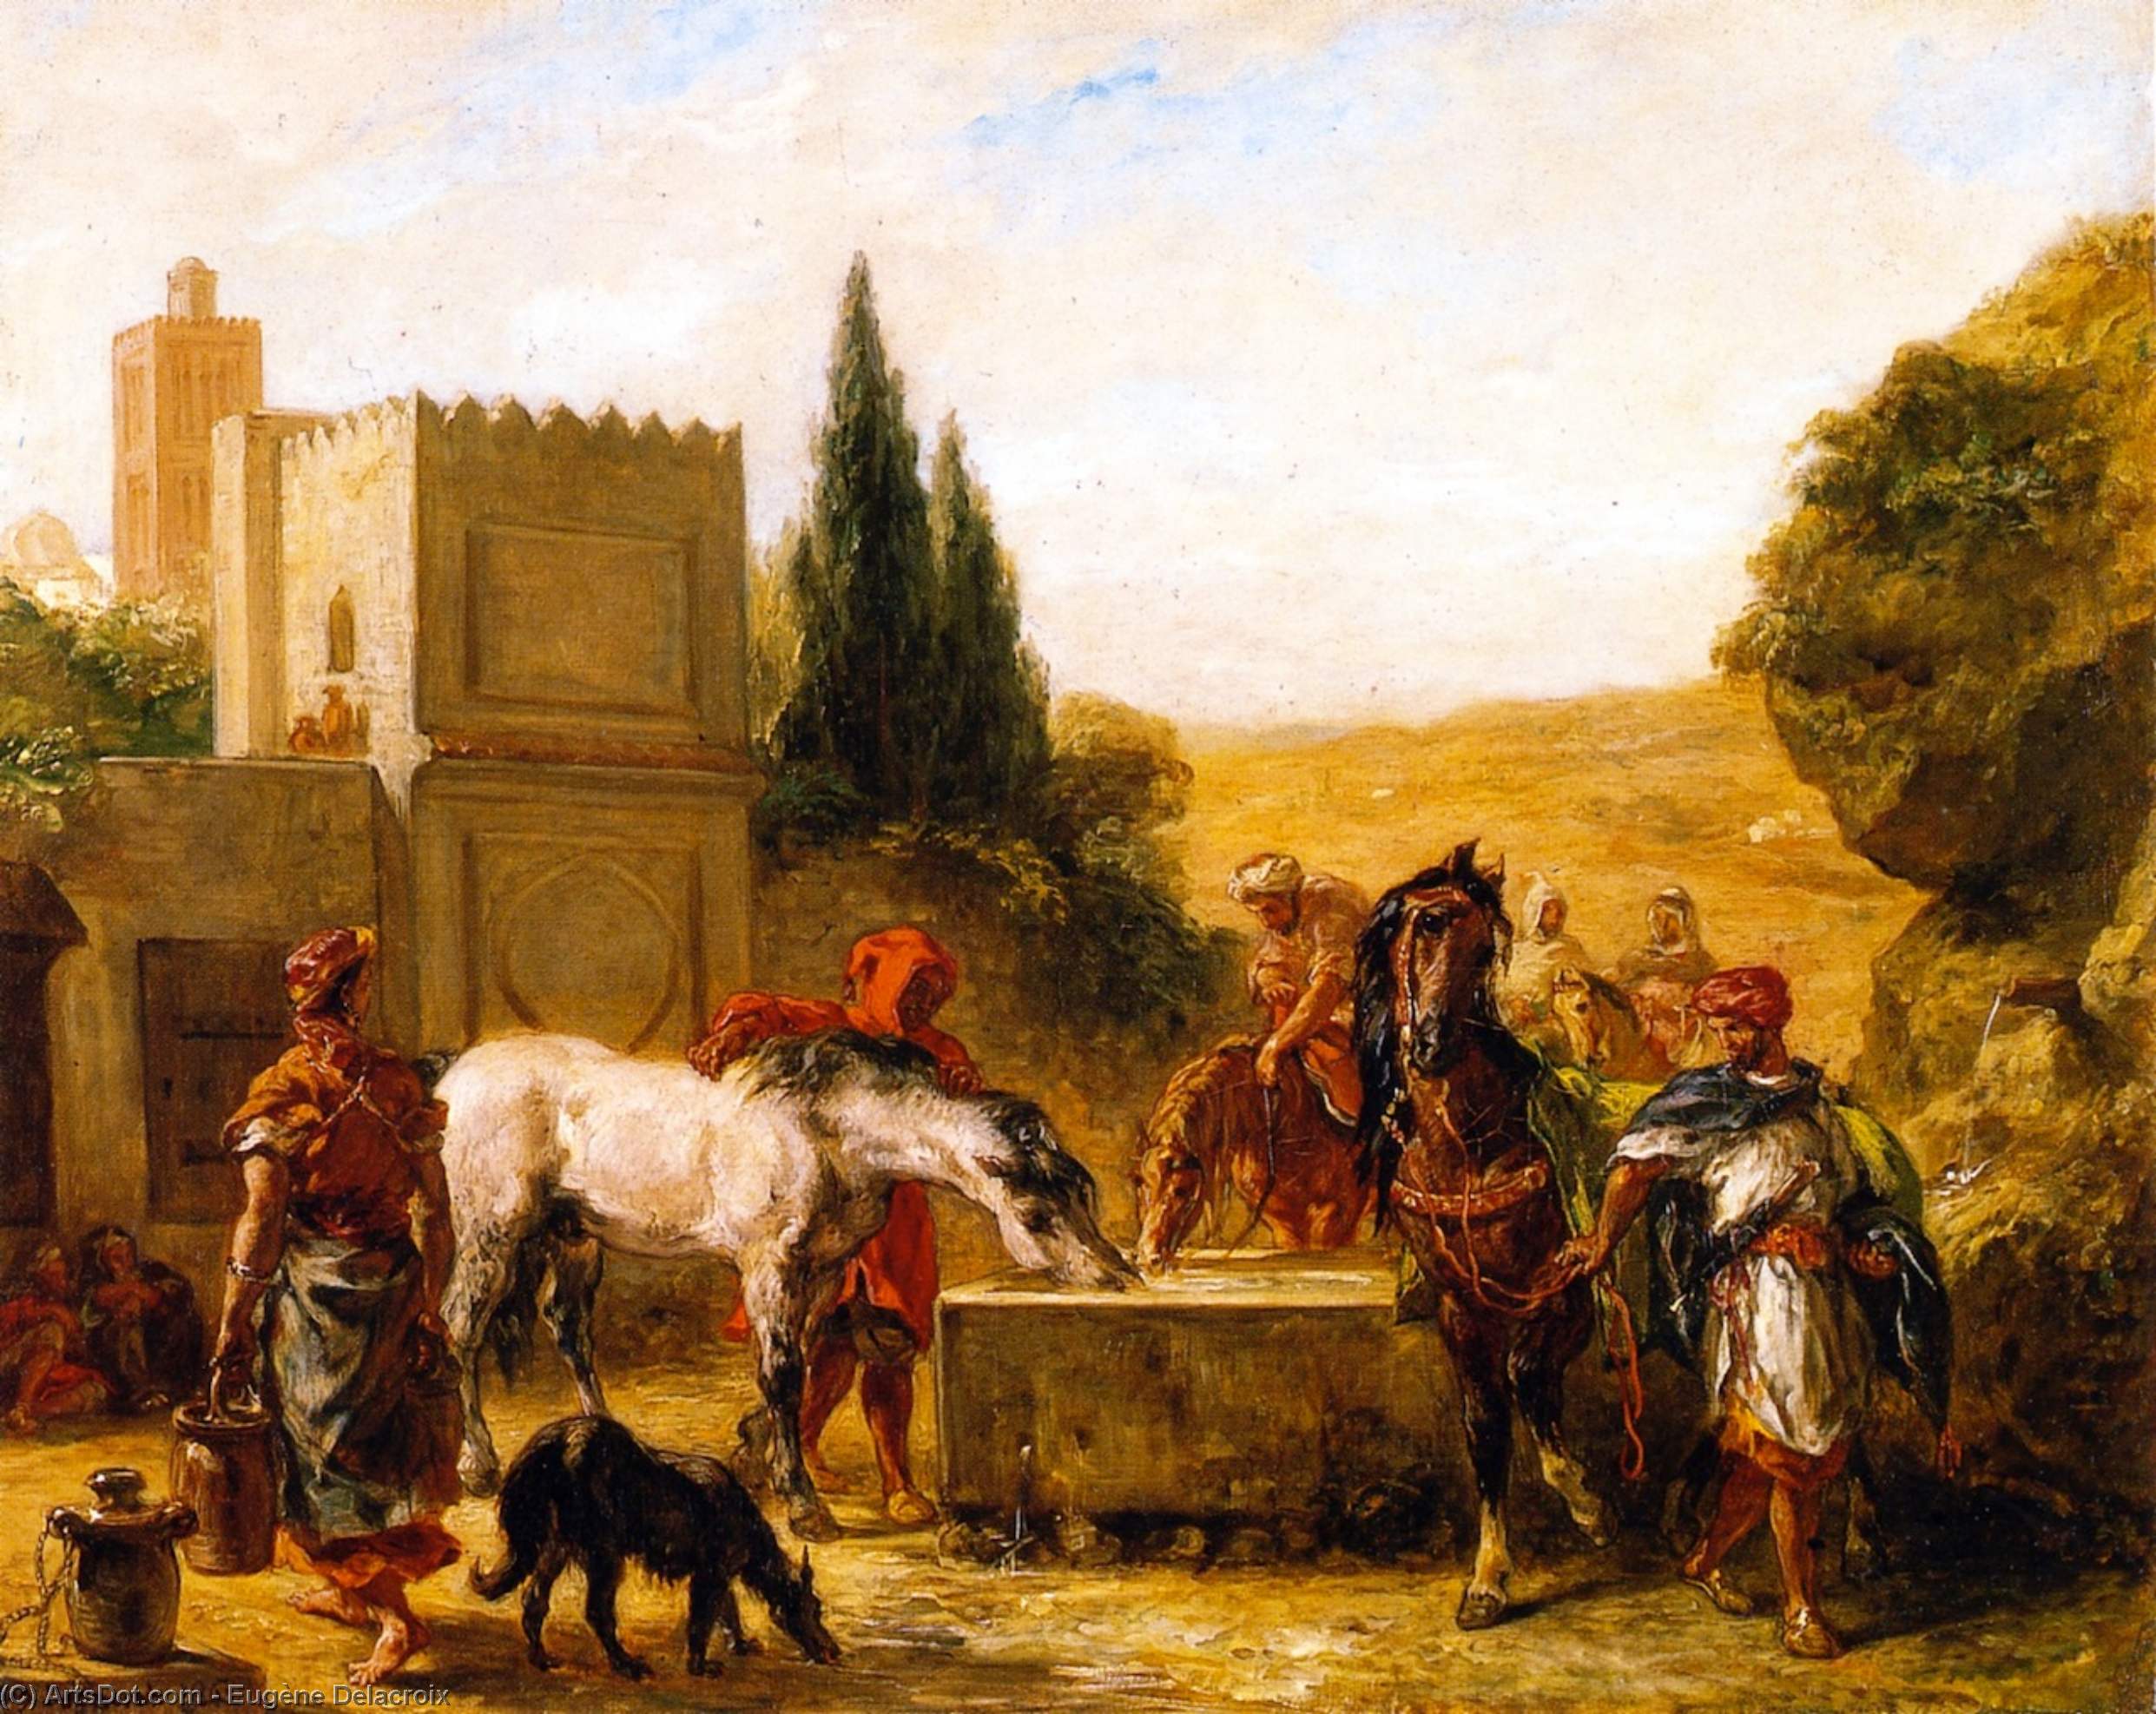 WikiOO.org - Enciclopédia das Belas Artes - Pintura, Arte por Eugène Delacroix - Horses at a Fountain